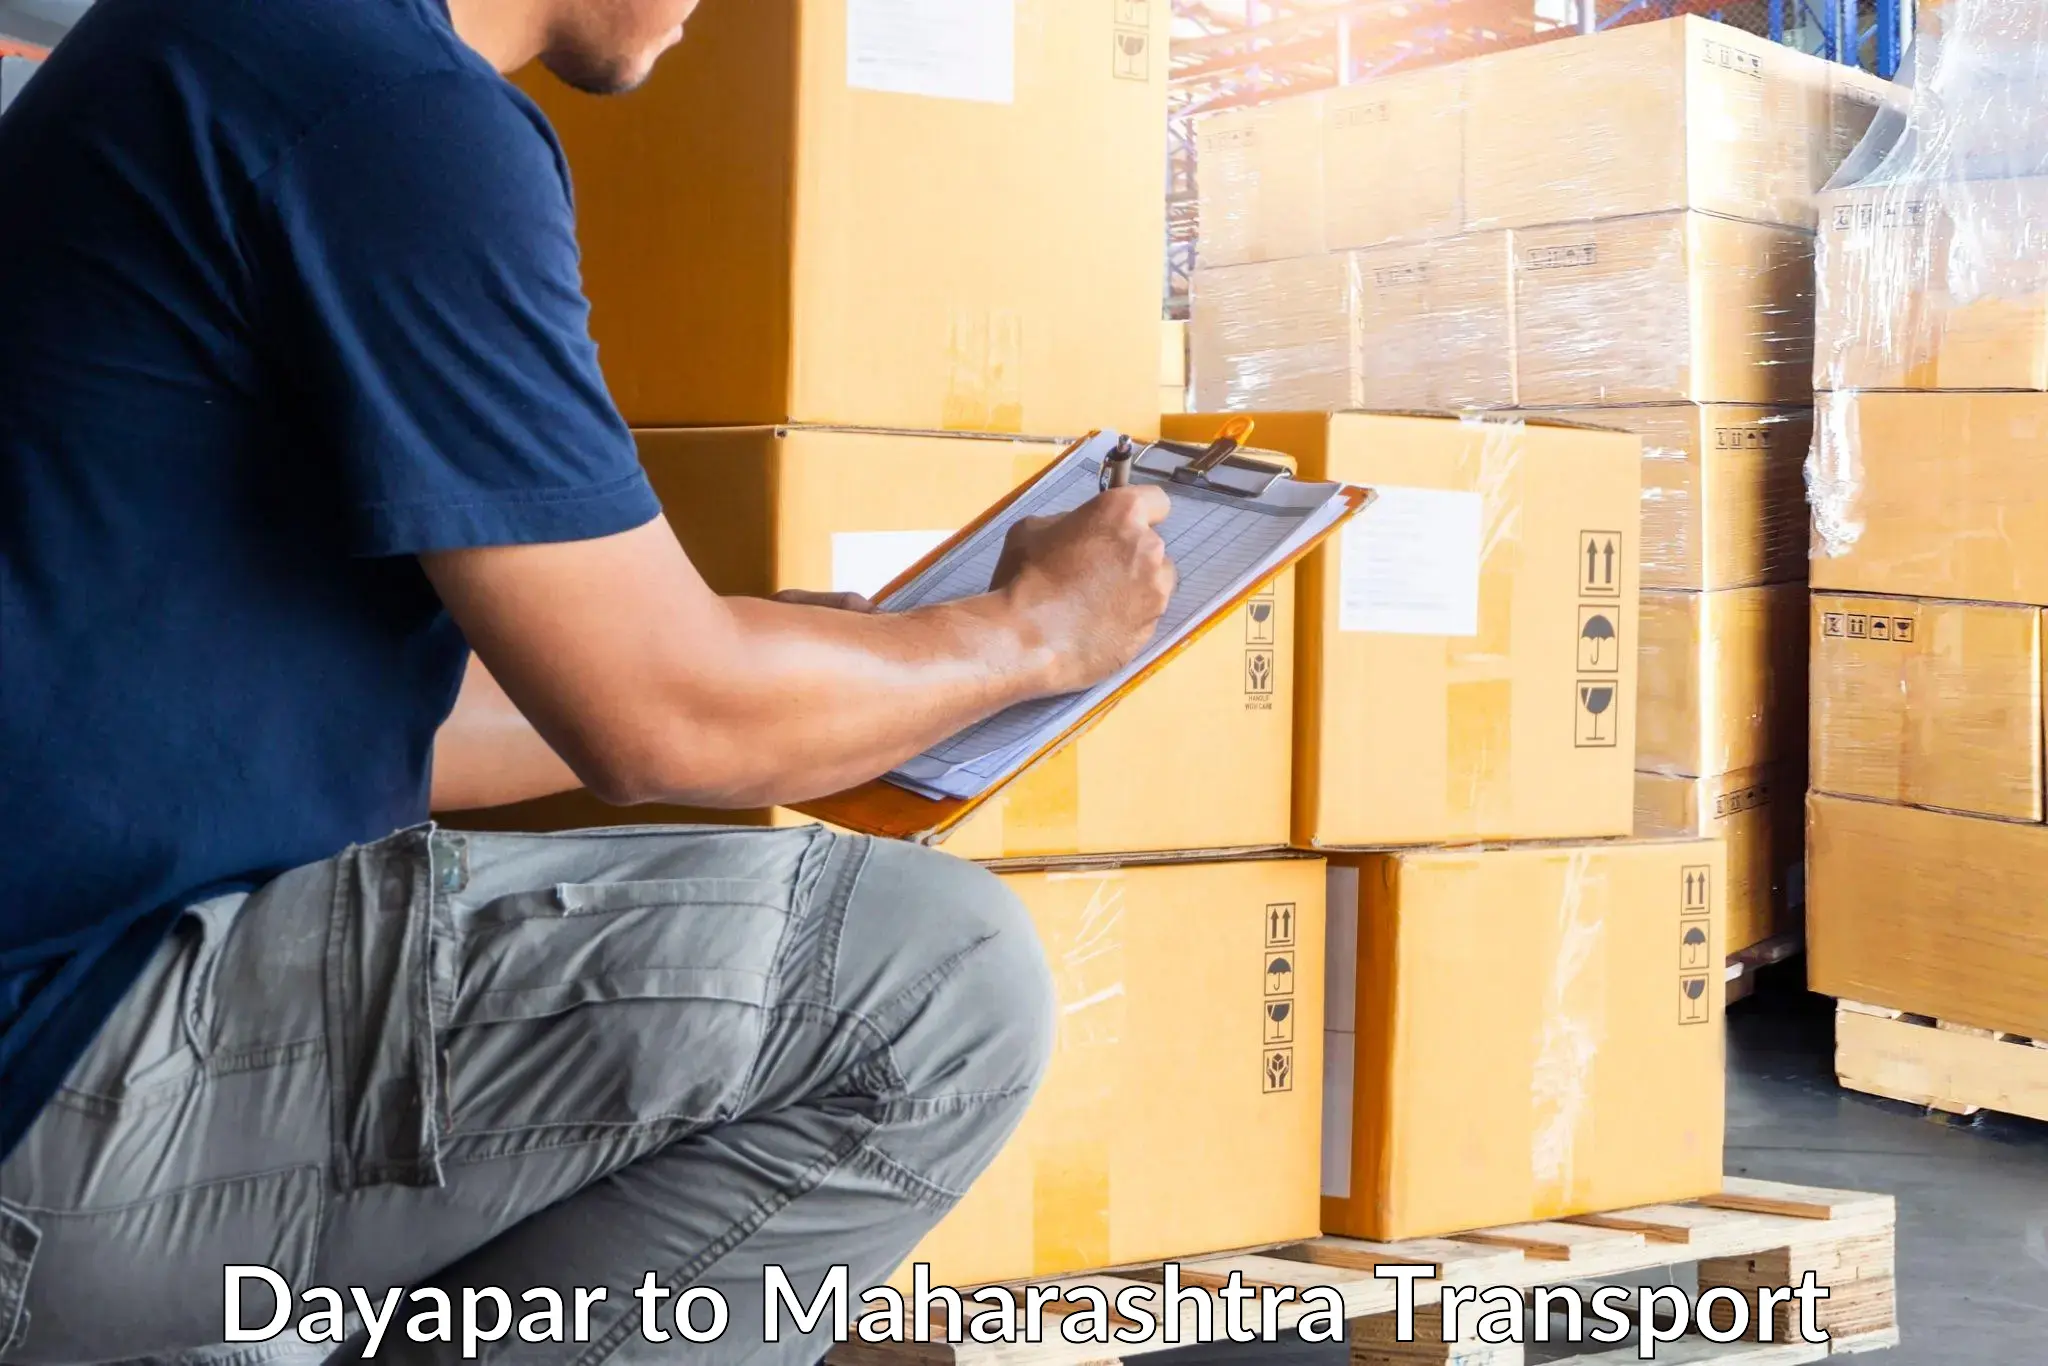 Cargo transport services Dayapar to Mumbai